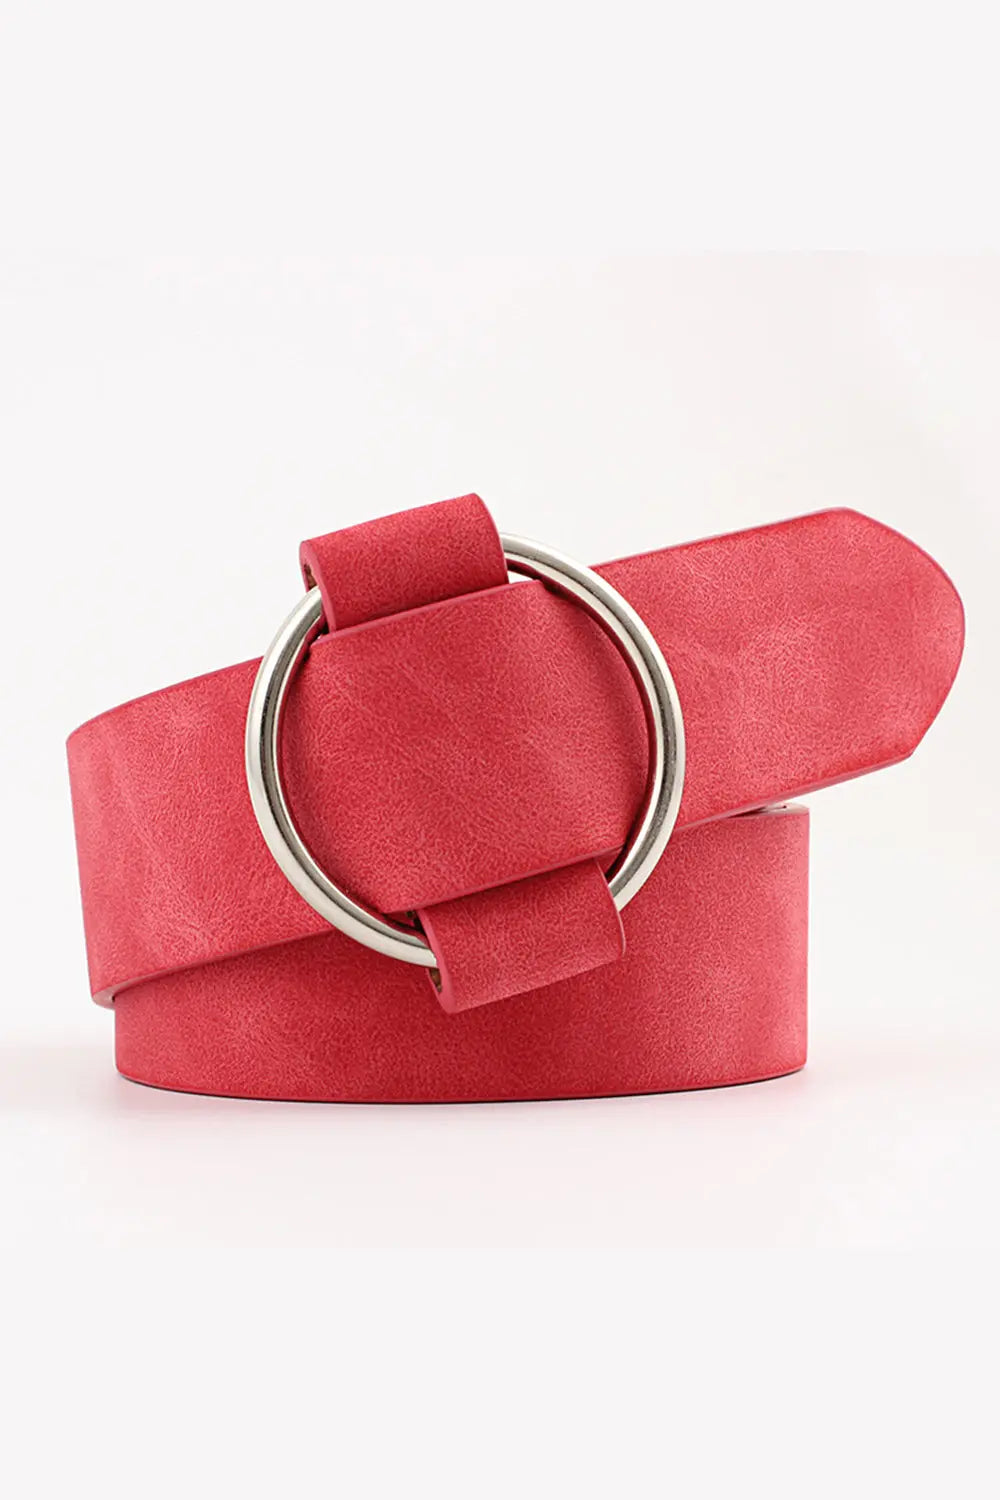 Needle-free Circle Belt - Red - Strange Clothes